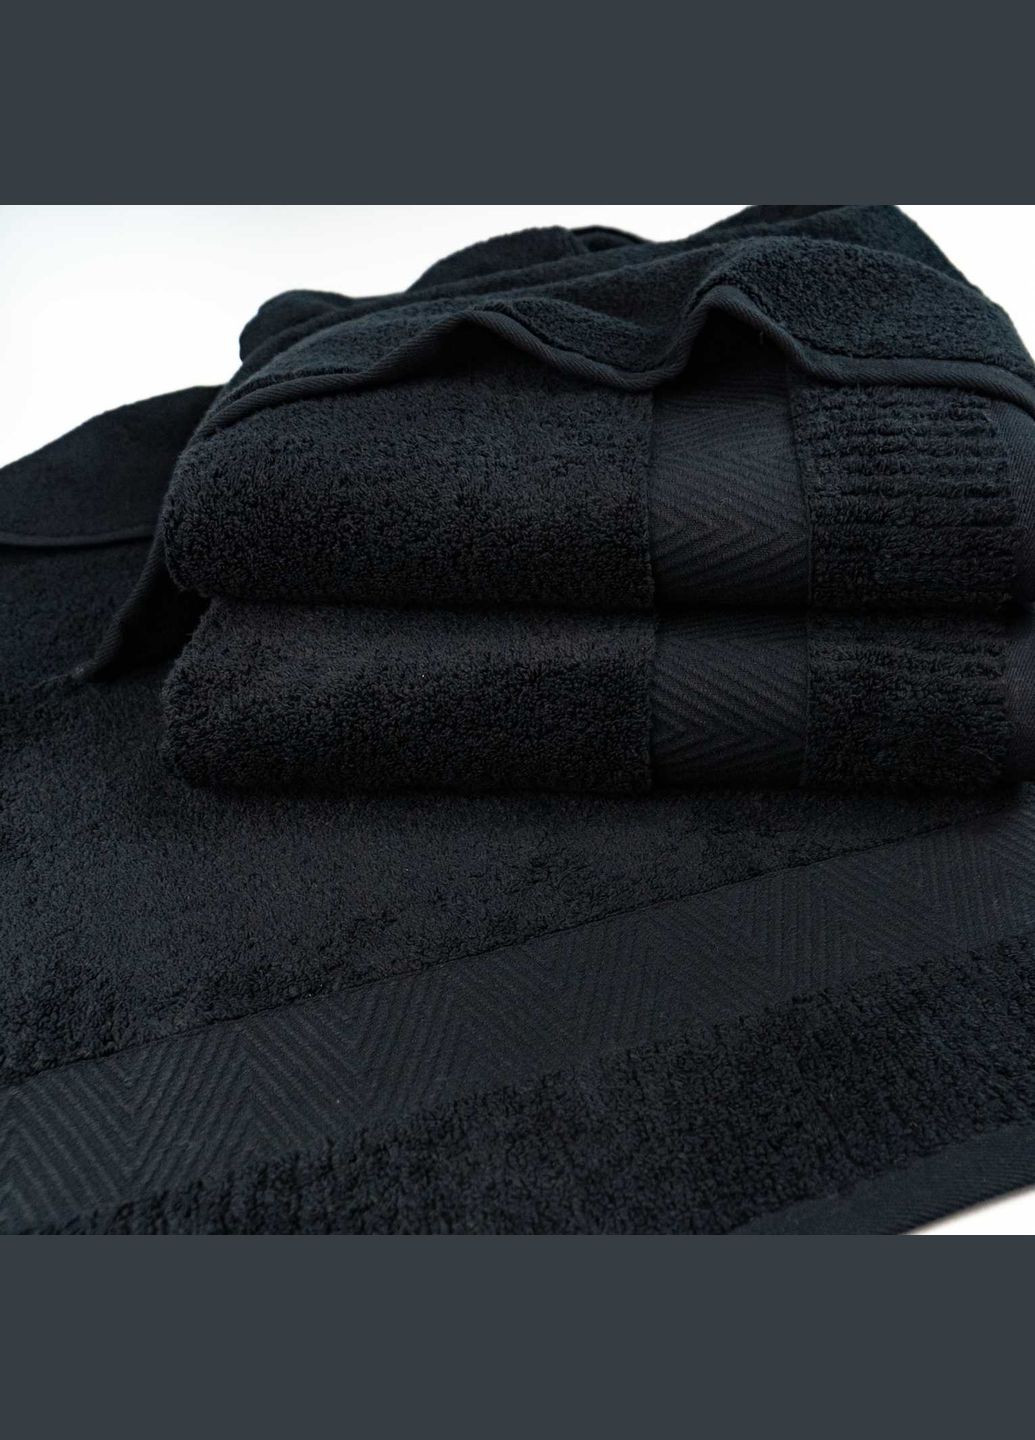 GM Textile комплект махрових рушників зеро твіст бордюр 3шт 40x70см, 50x90см, 70x140см 550г/м2 (чорний) чорний виробництво -